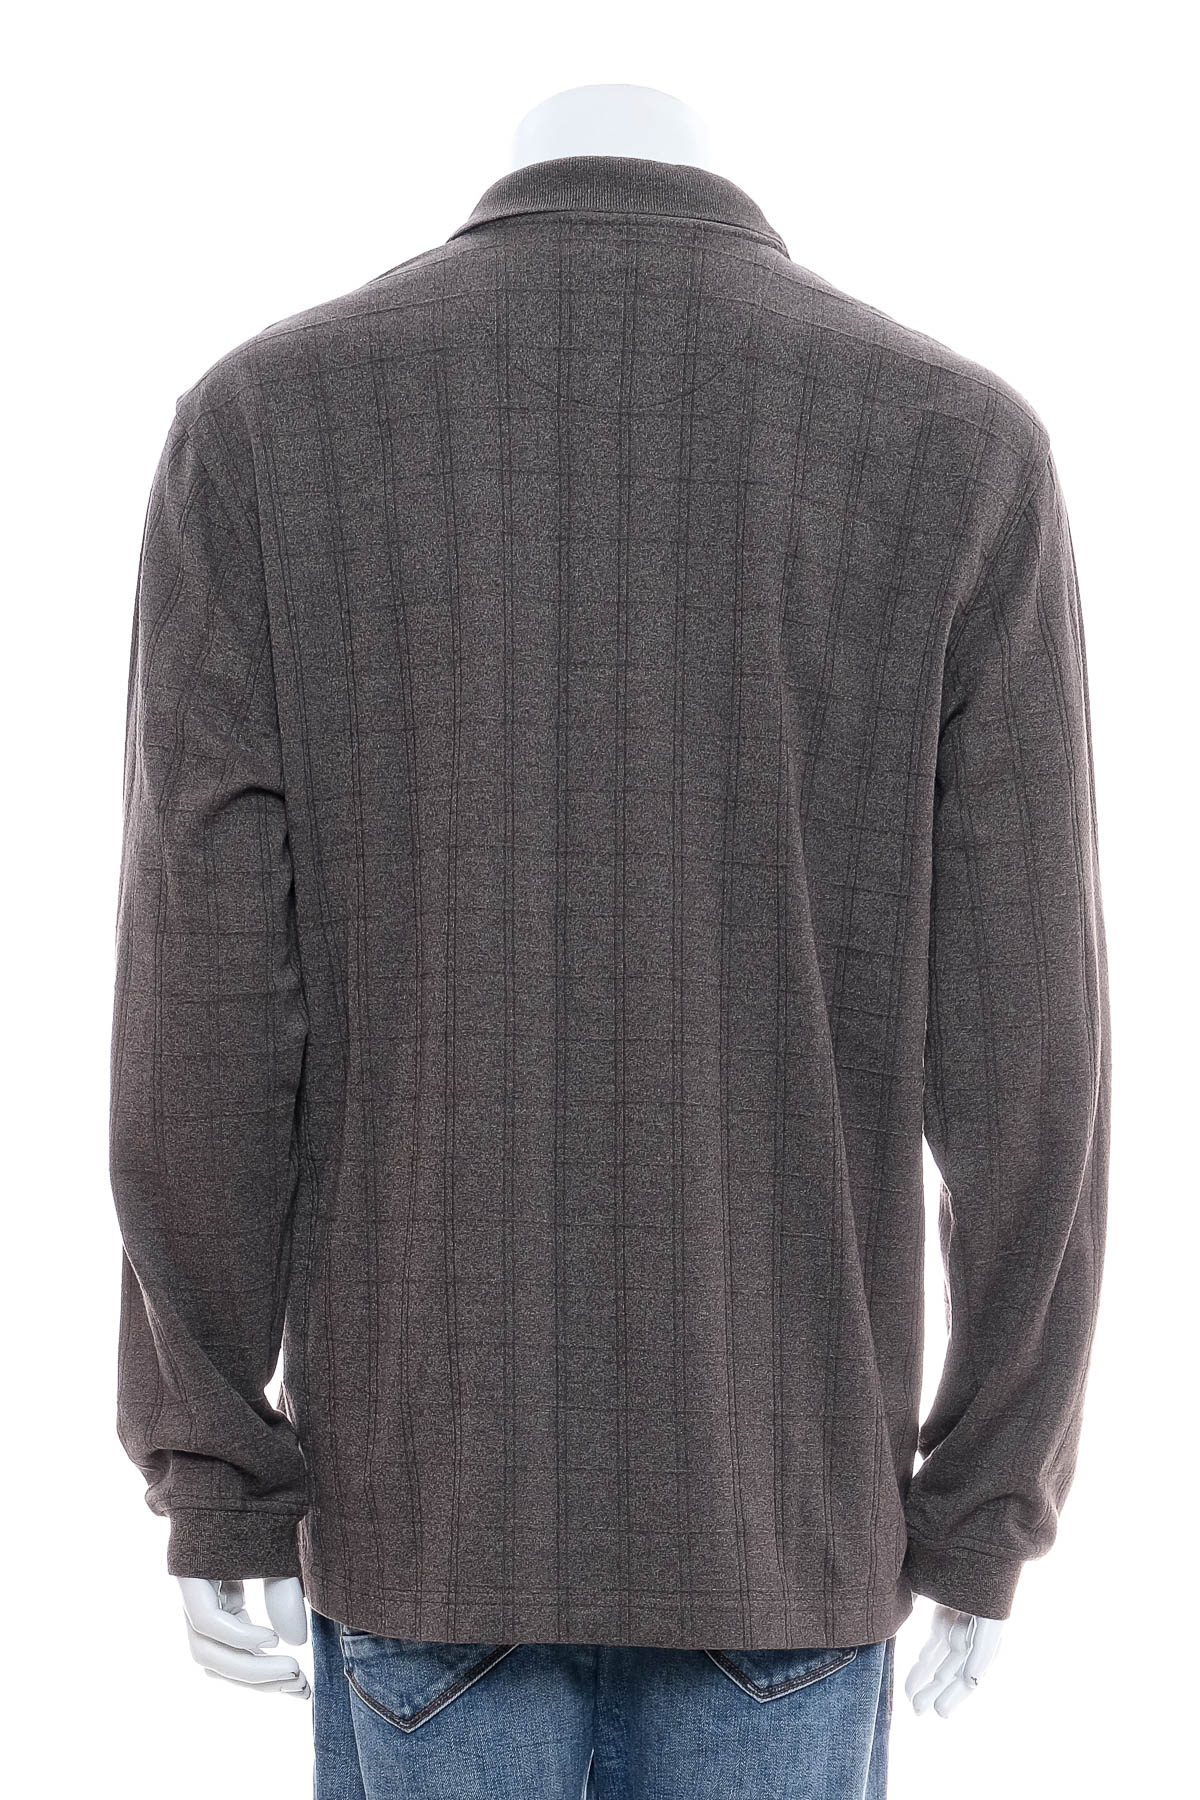 Men's sweater - Van Heusen - 1